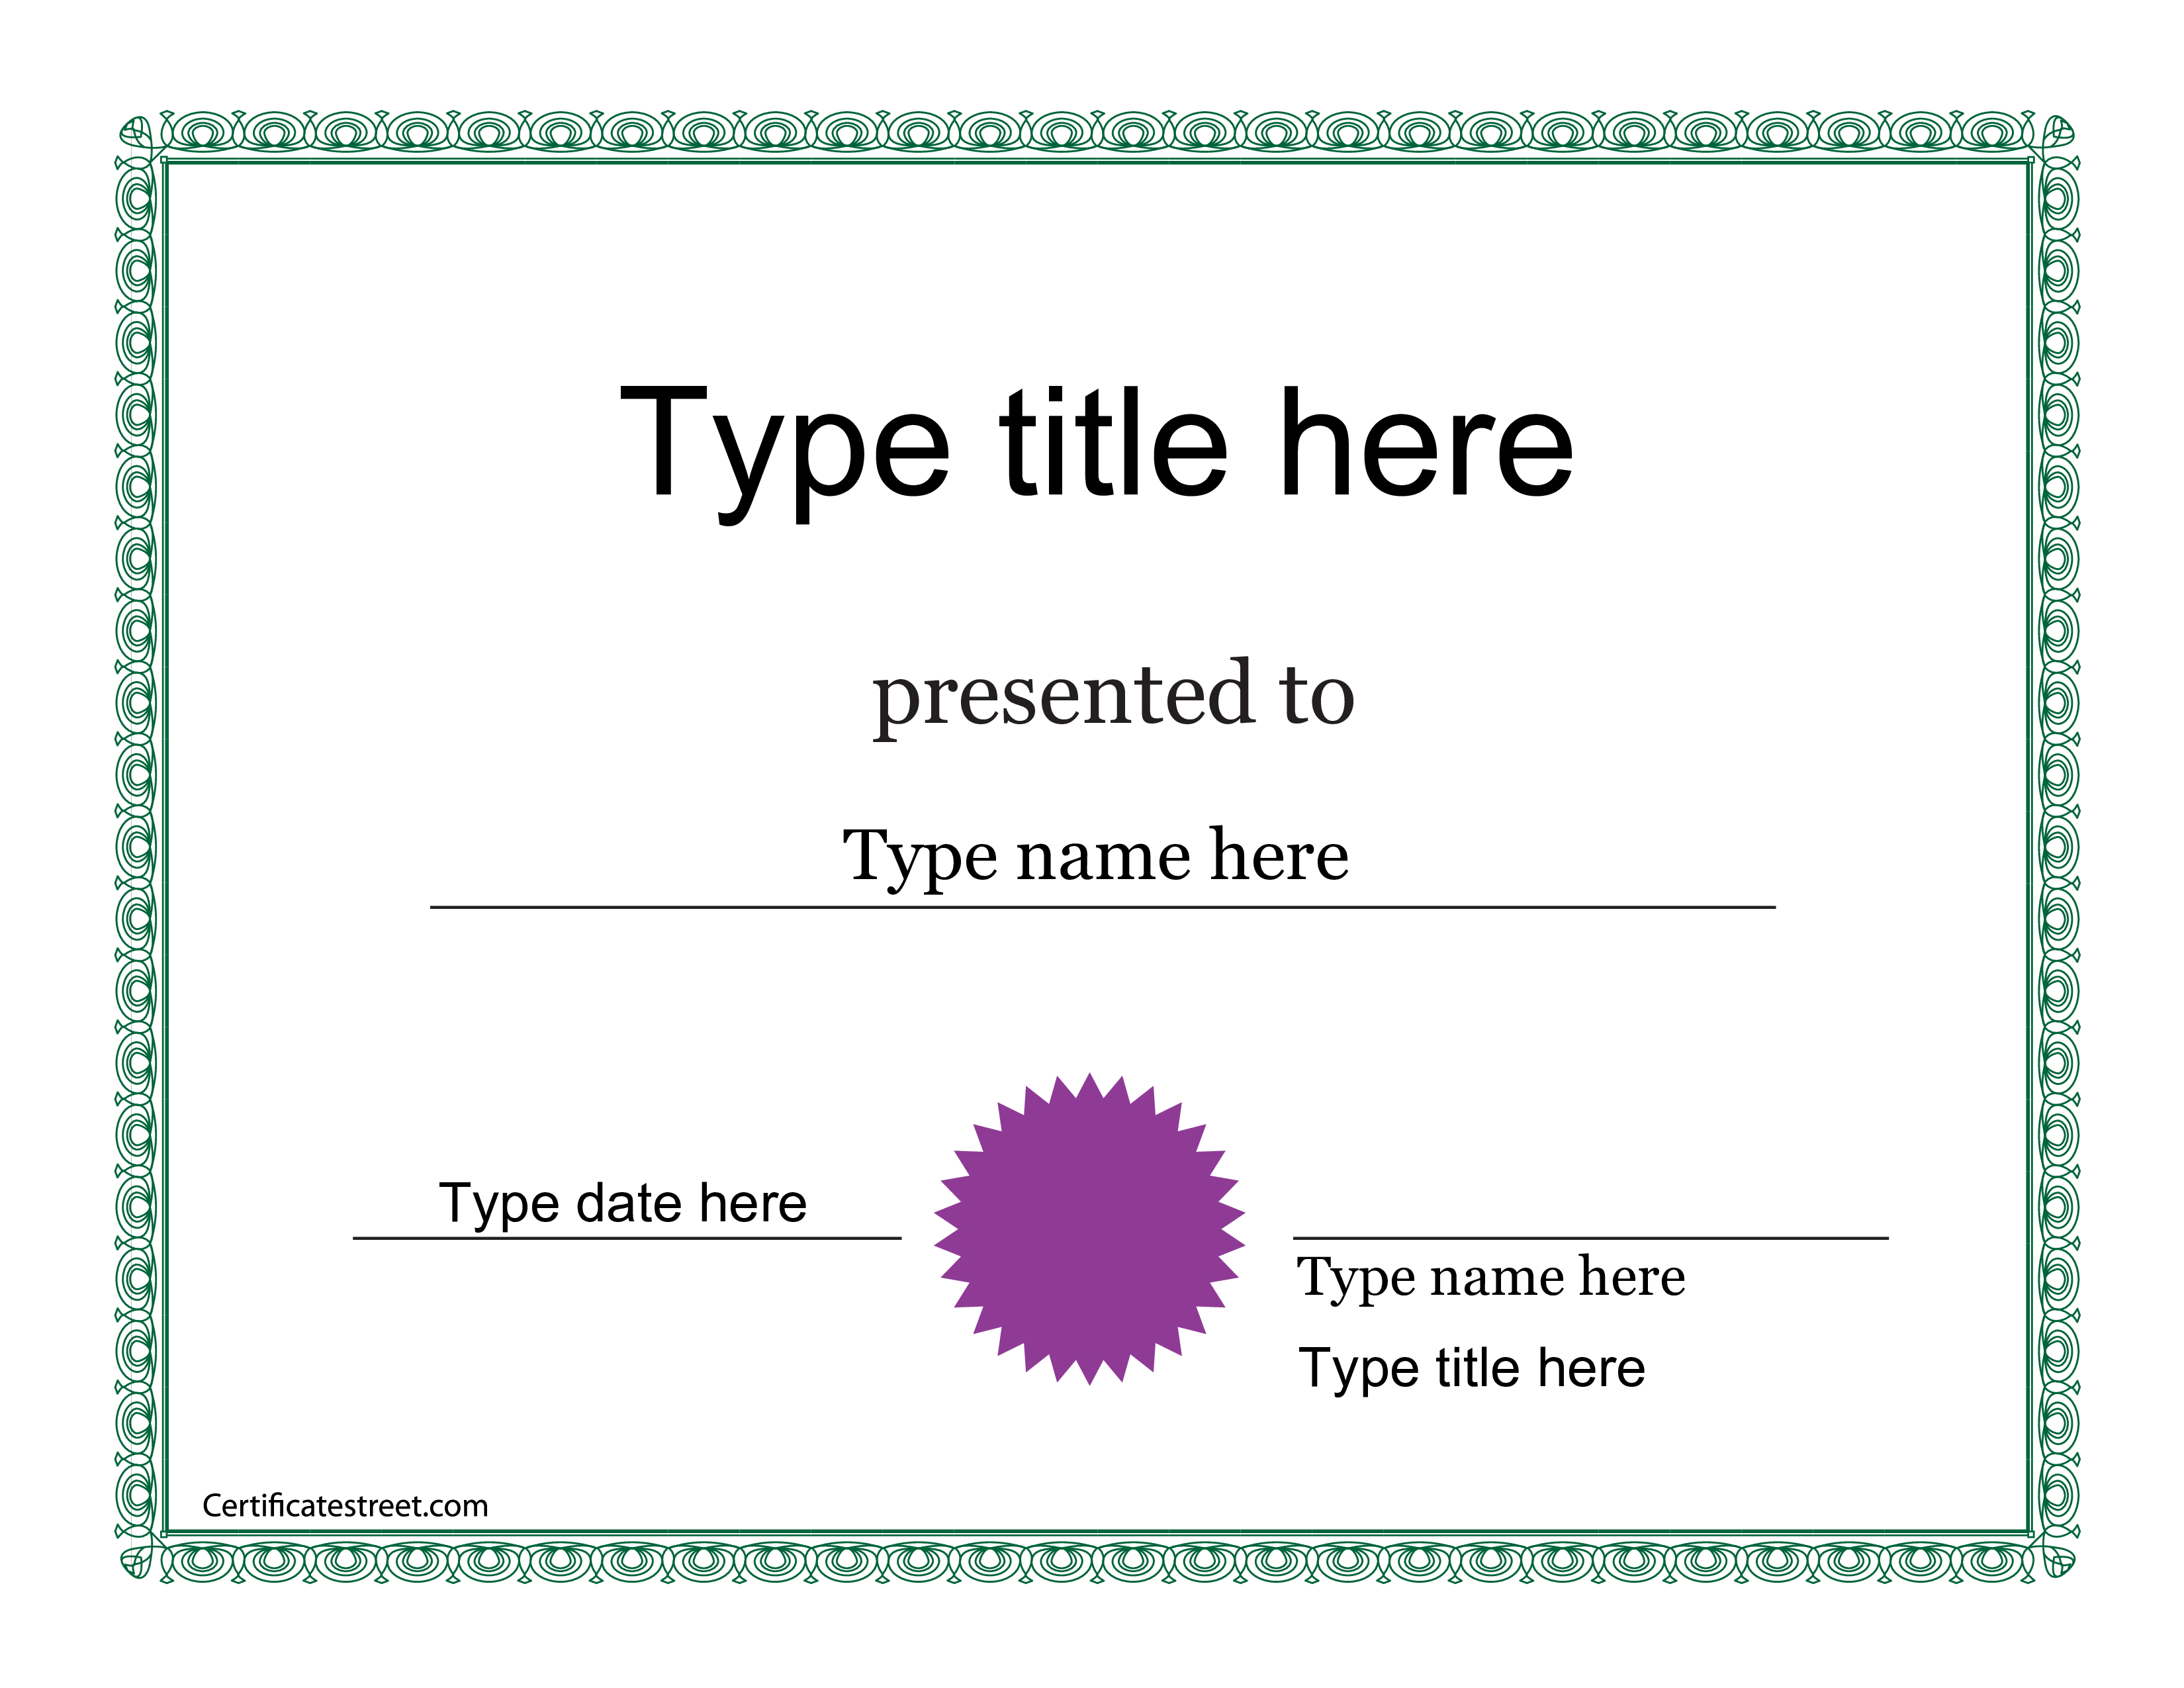 Personal Certificate Sample main image